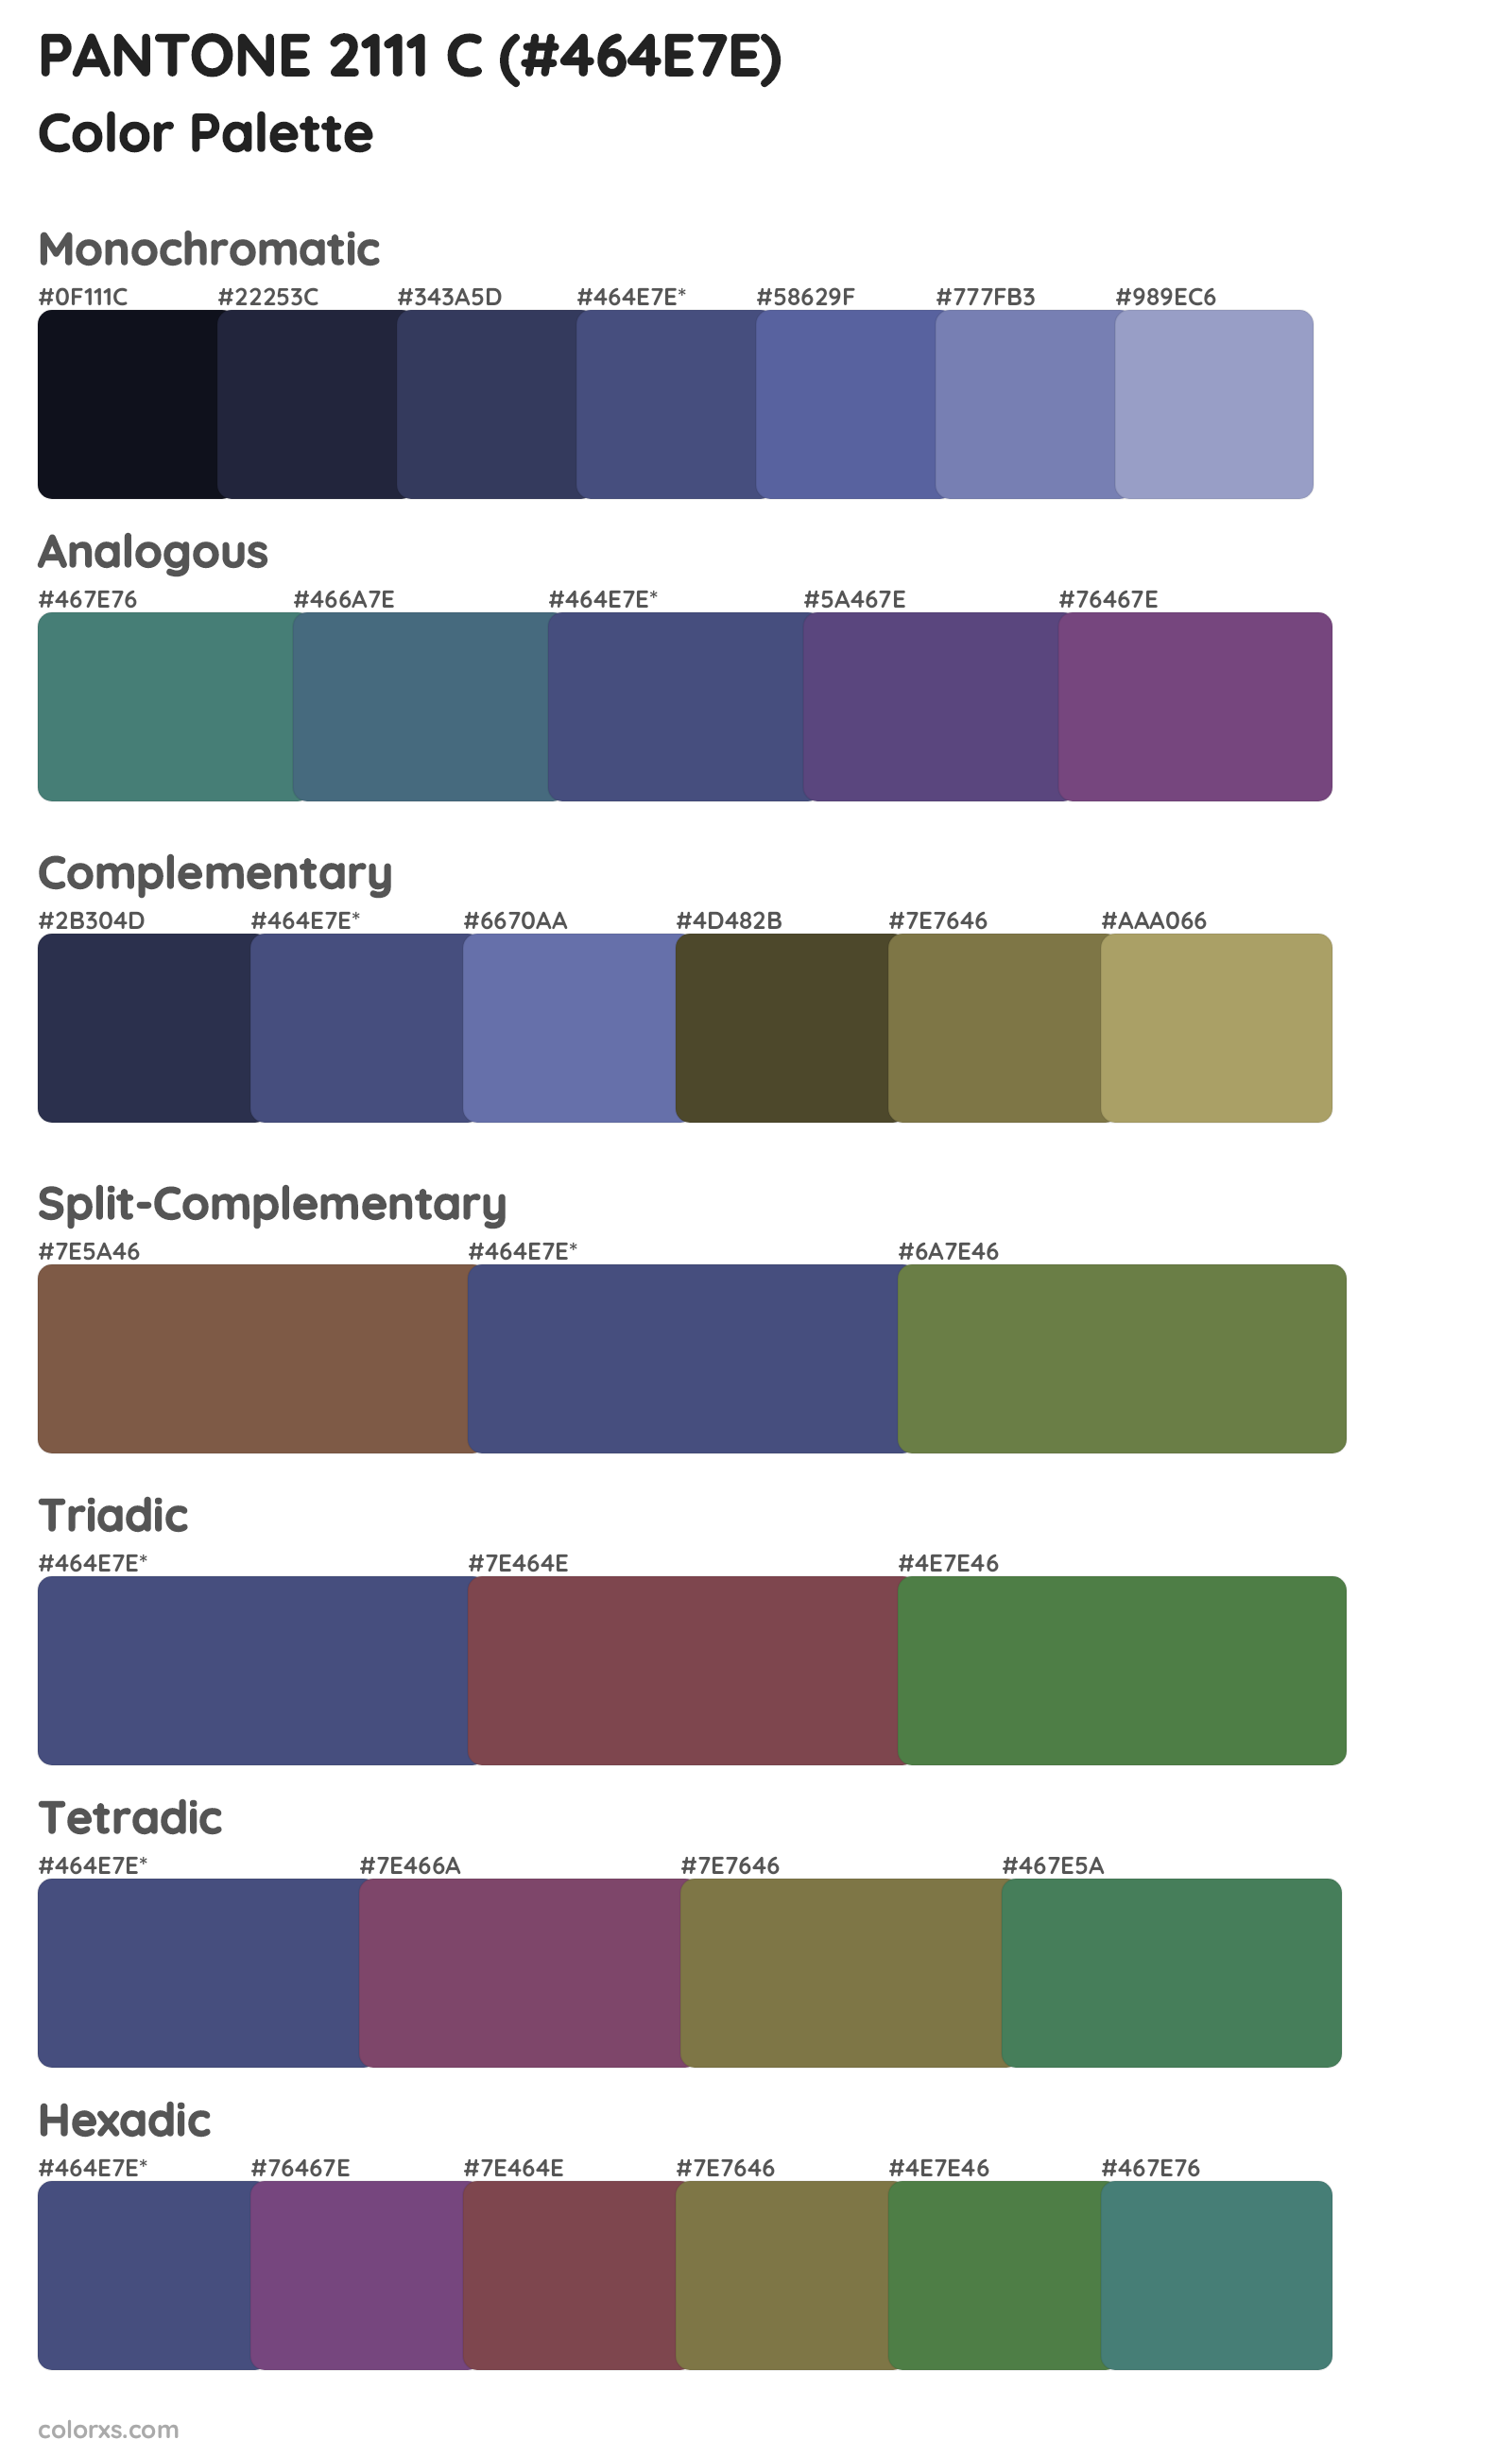 PANTONE 2111 C Color Scheme Palettes